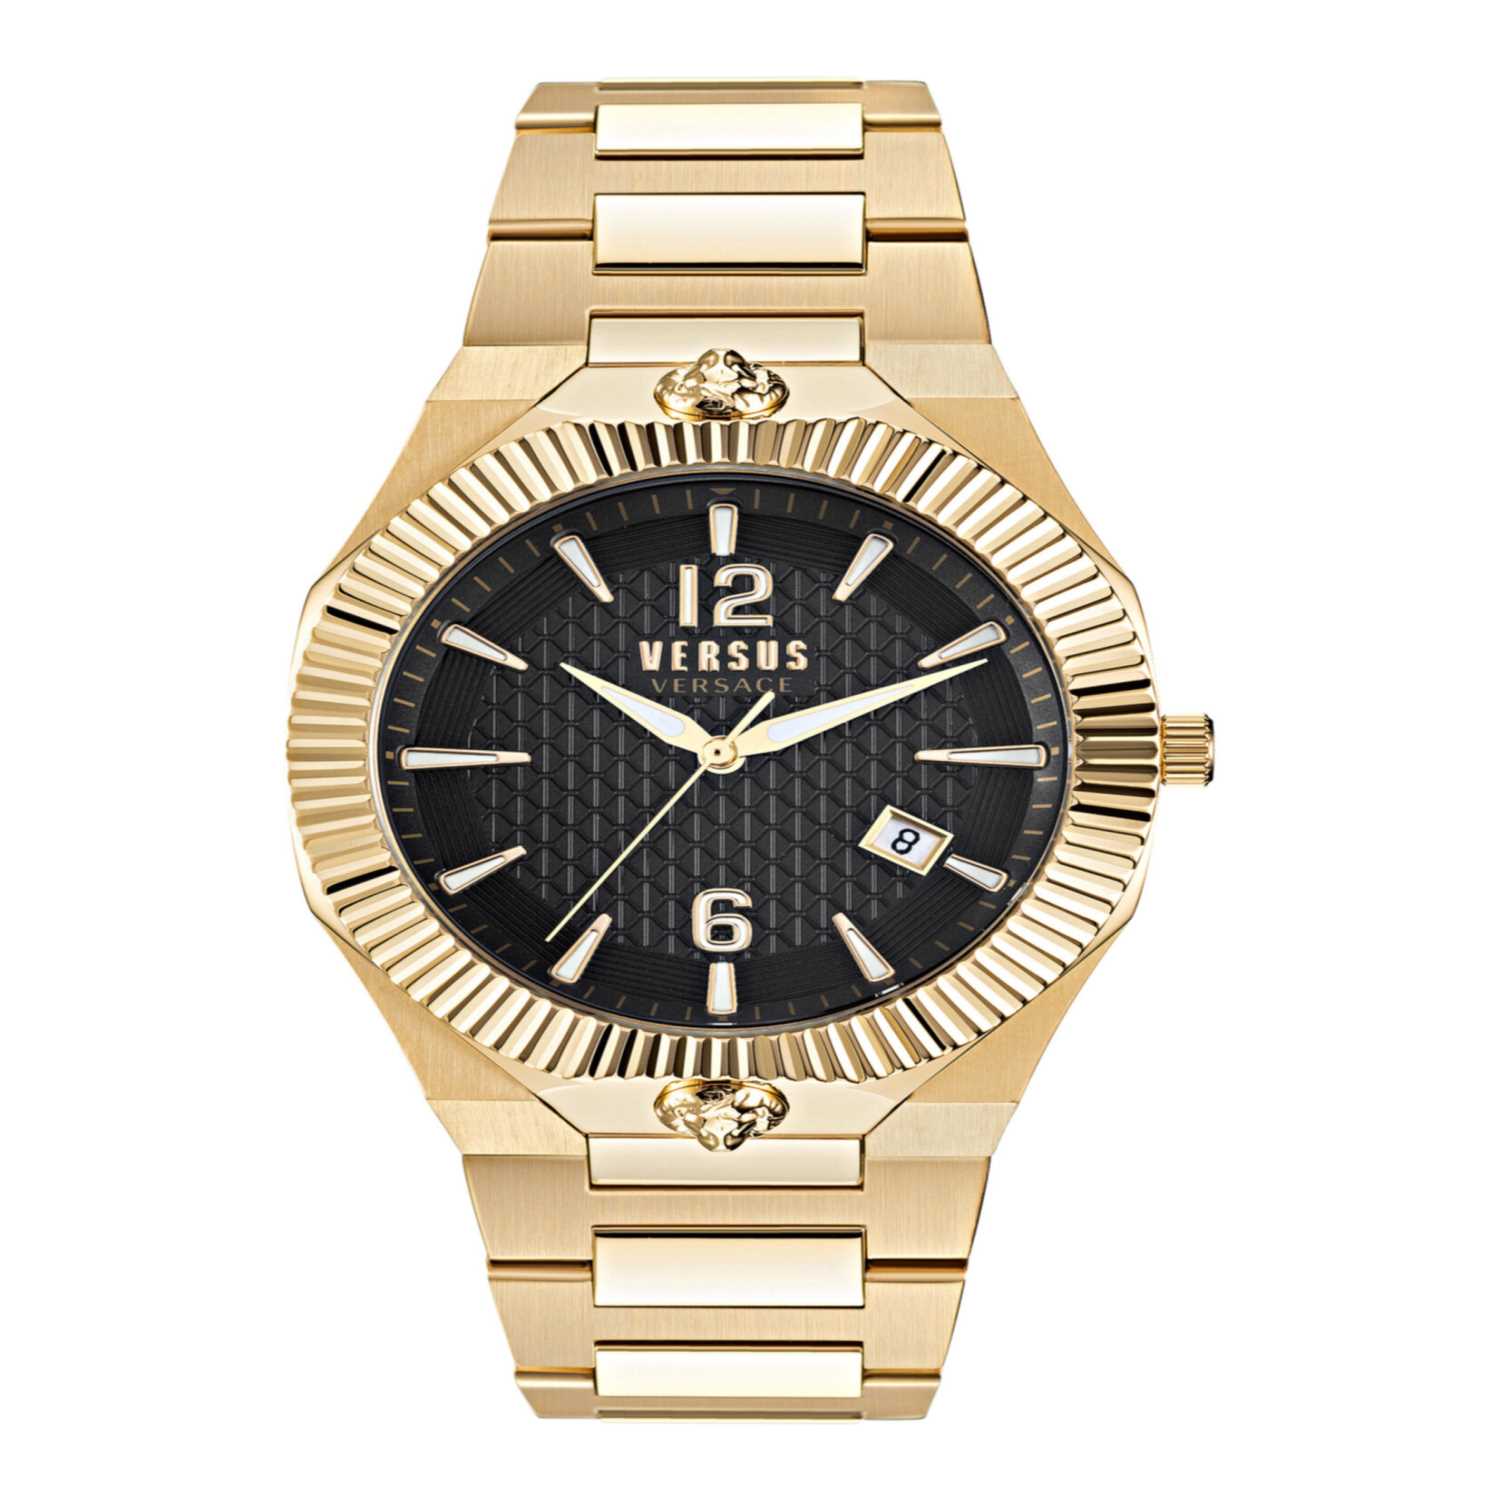 Reloj Echo Park Vsp1P0721 Versus Versace para Hombre en Dorado